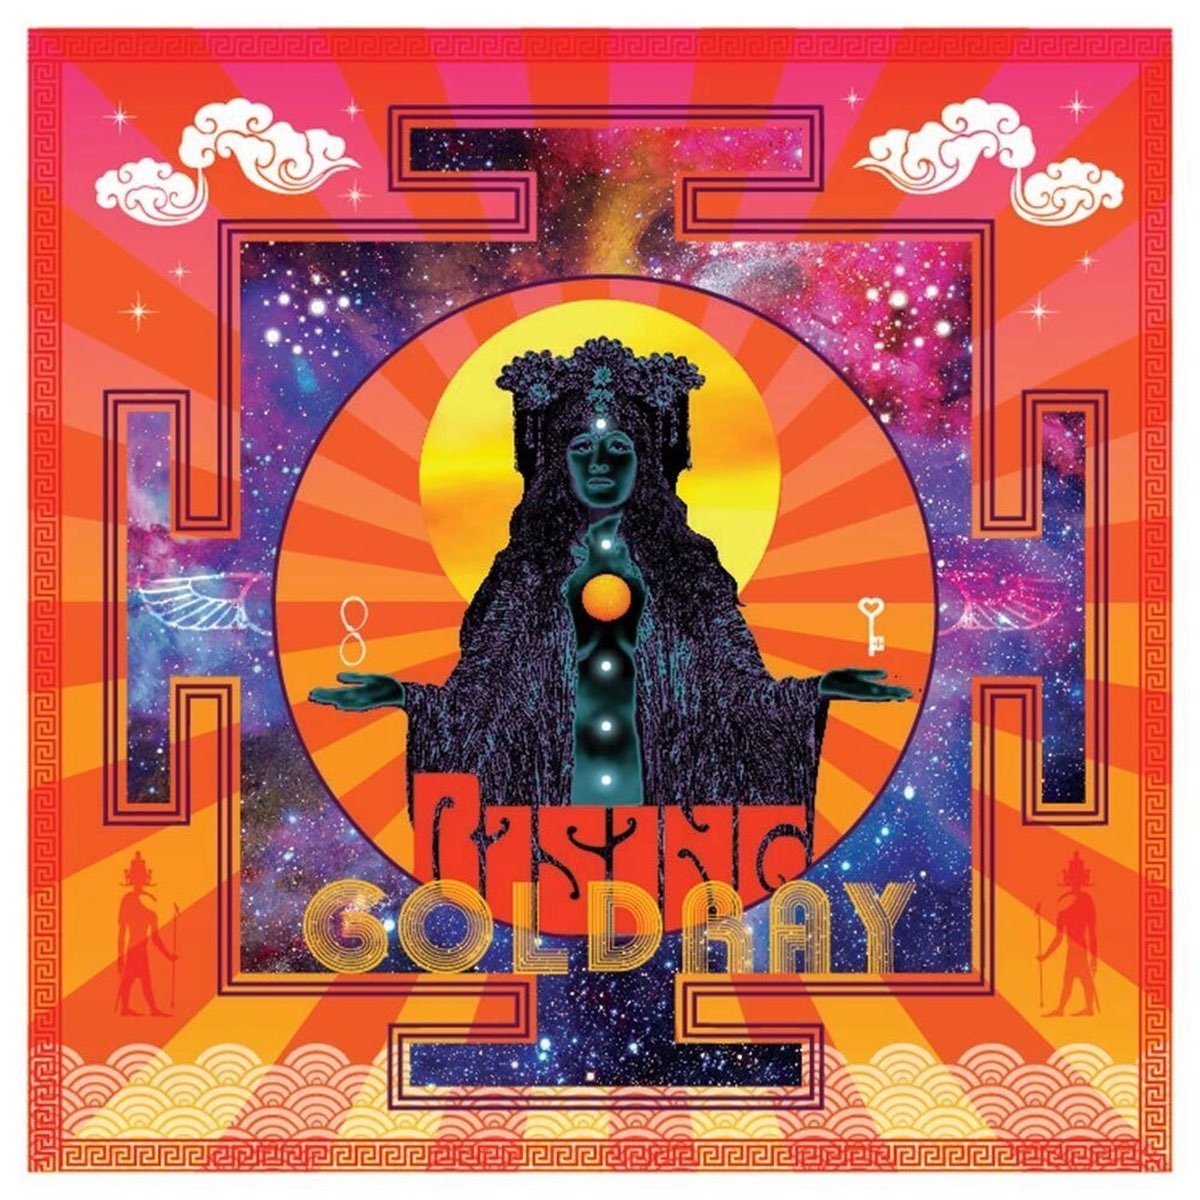 Goldray - Rising vinyl cover